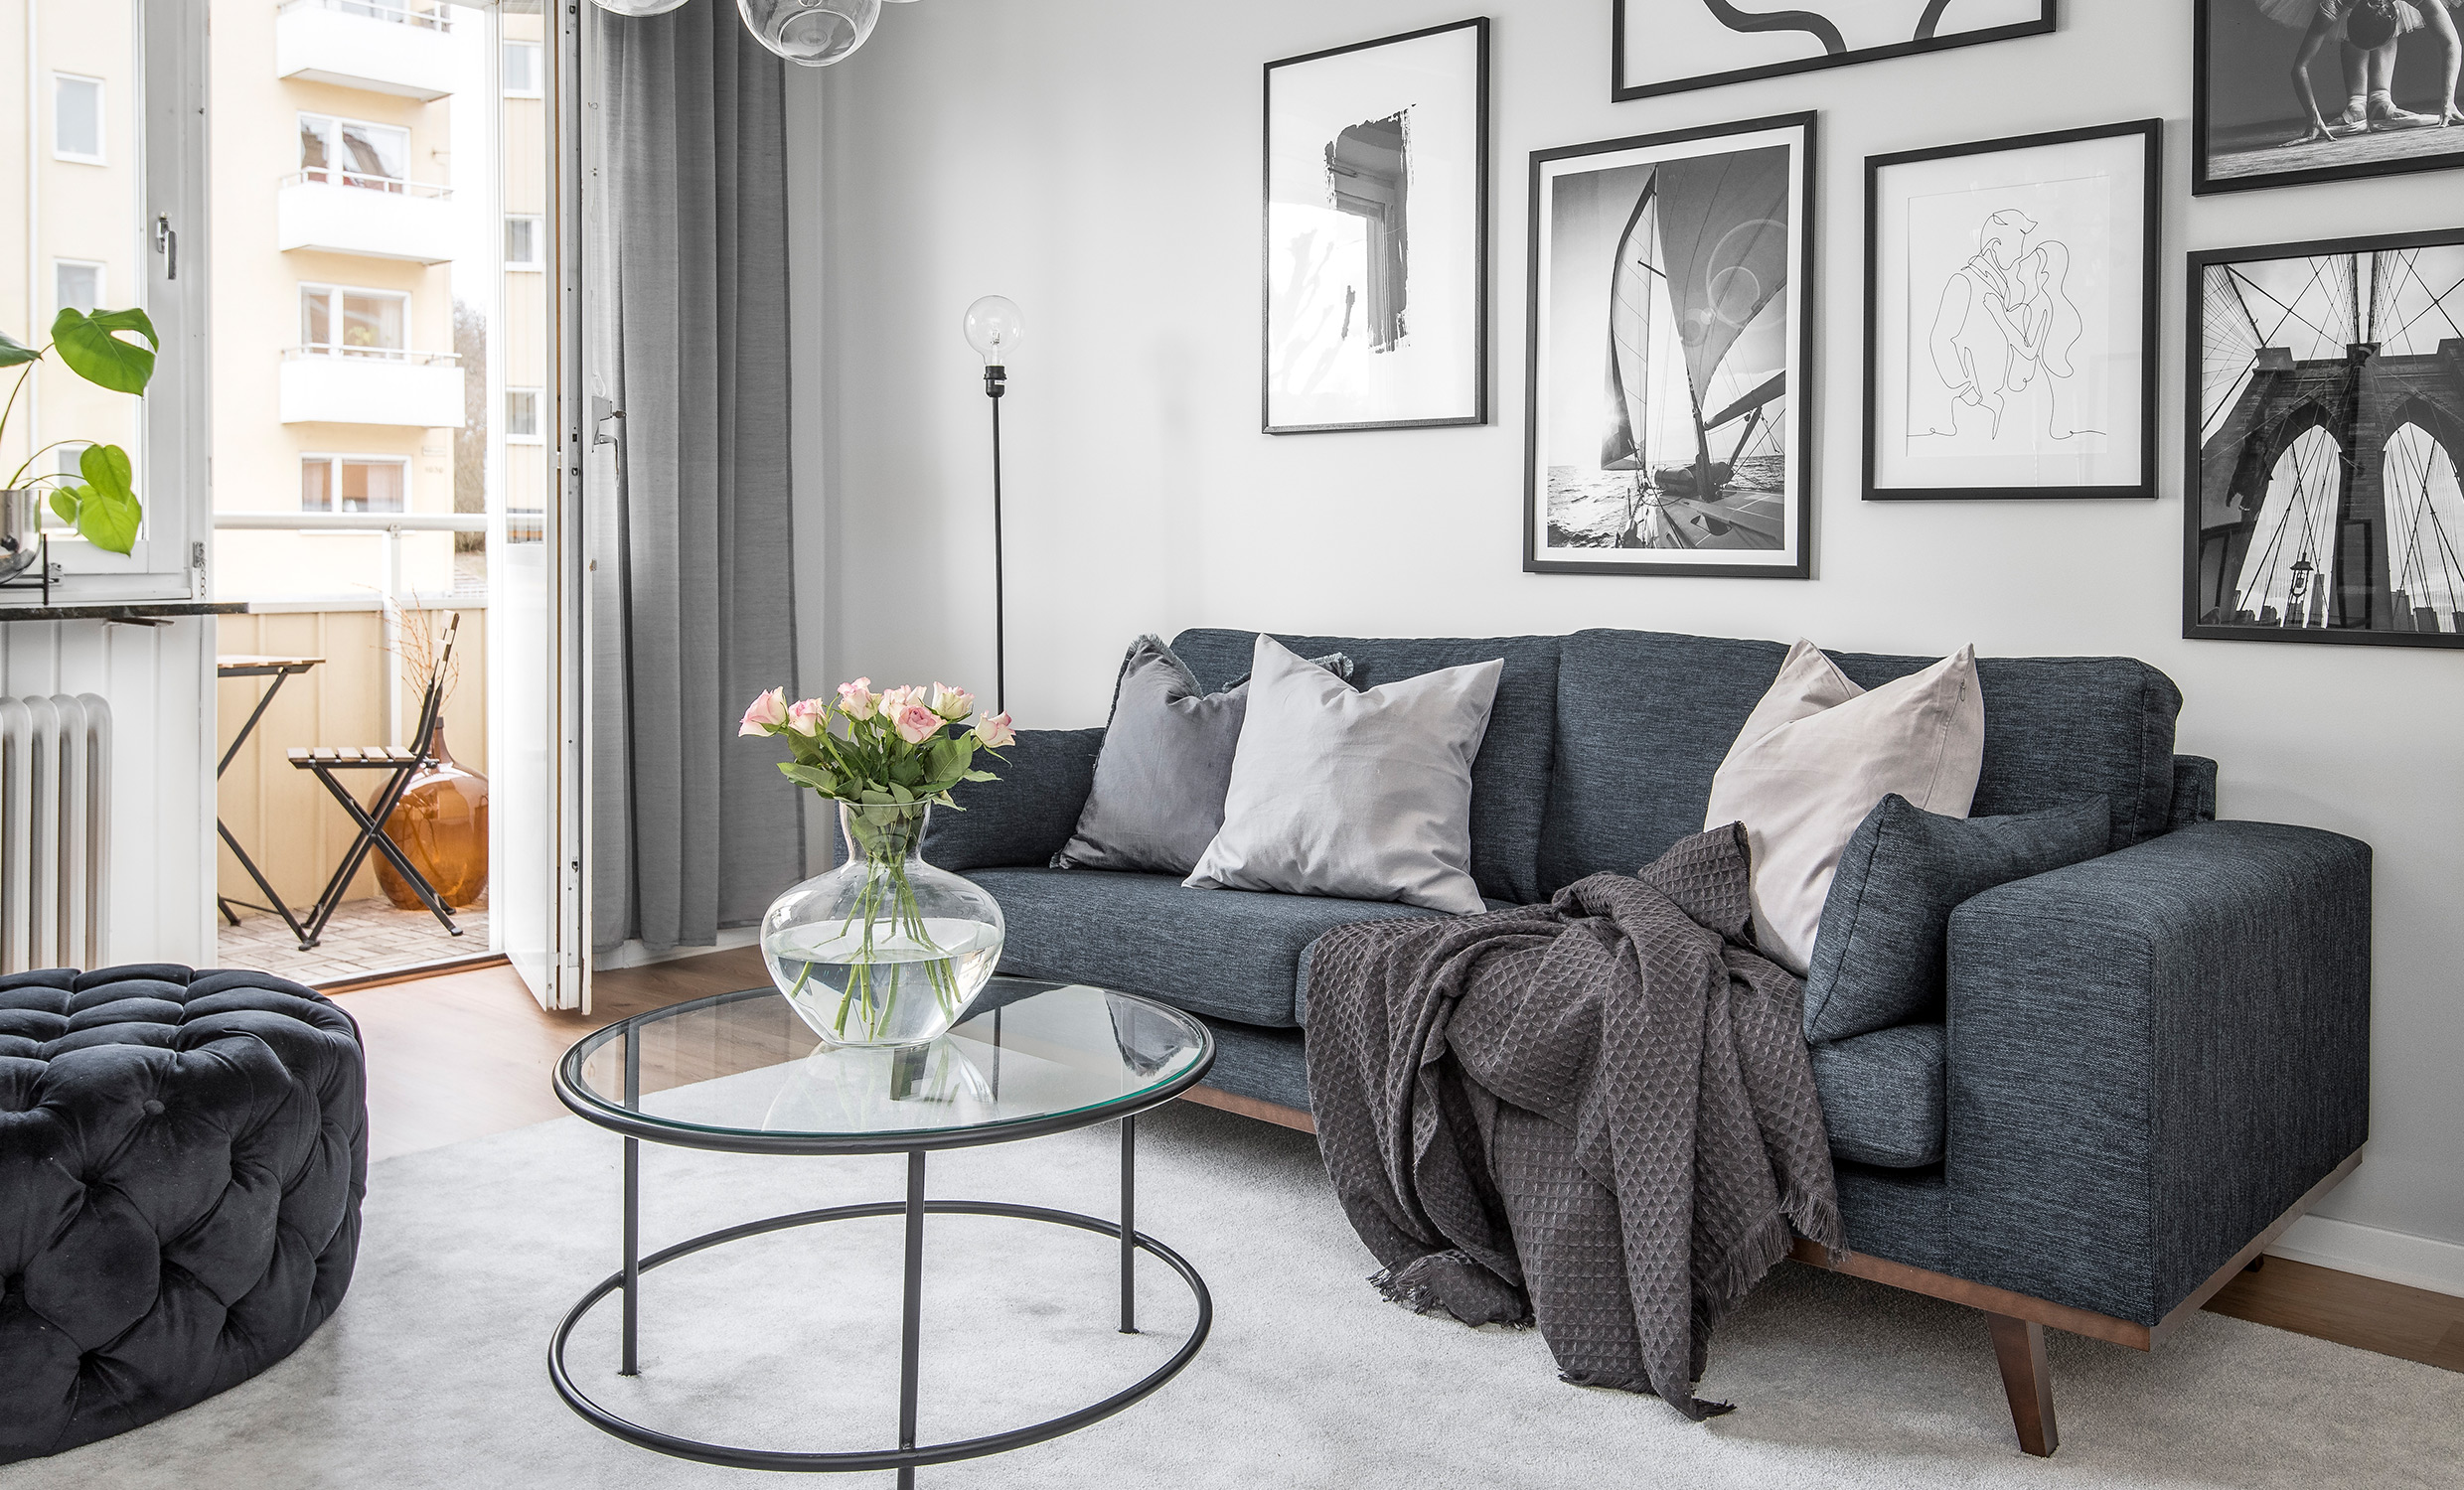 STOCKHOLM Fusion 3-seters sofa Mrkegr